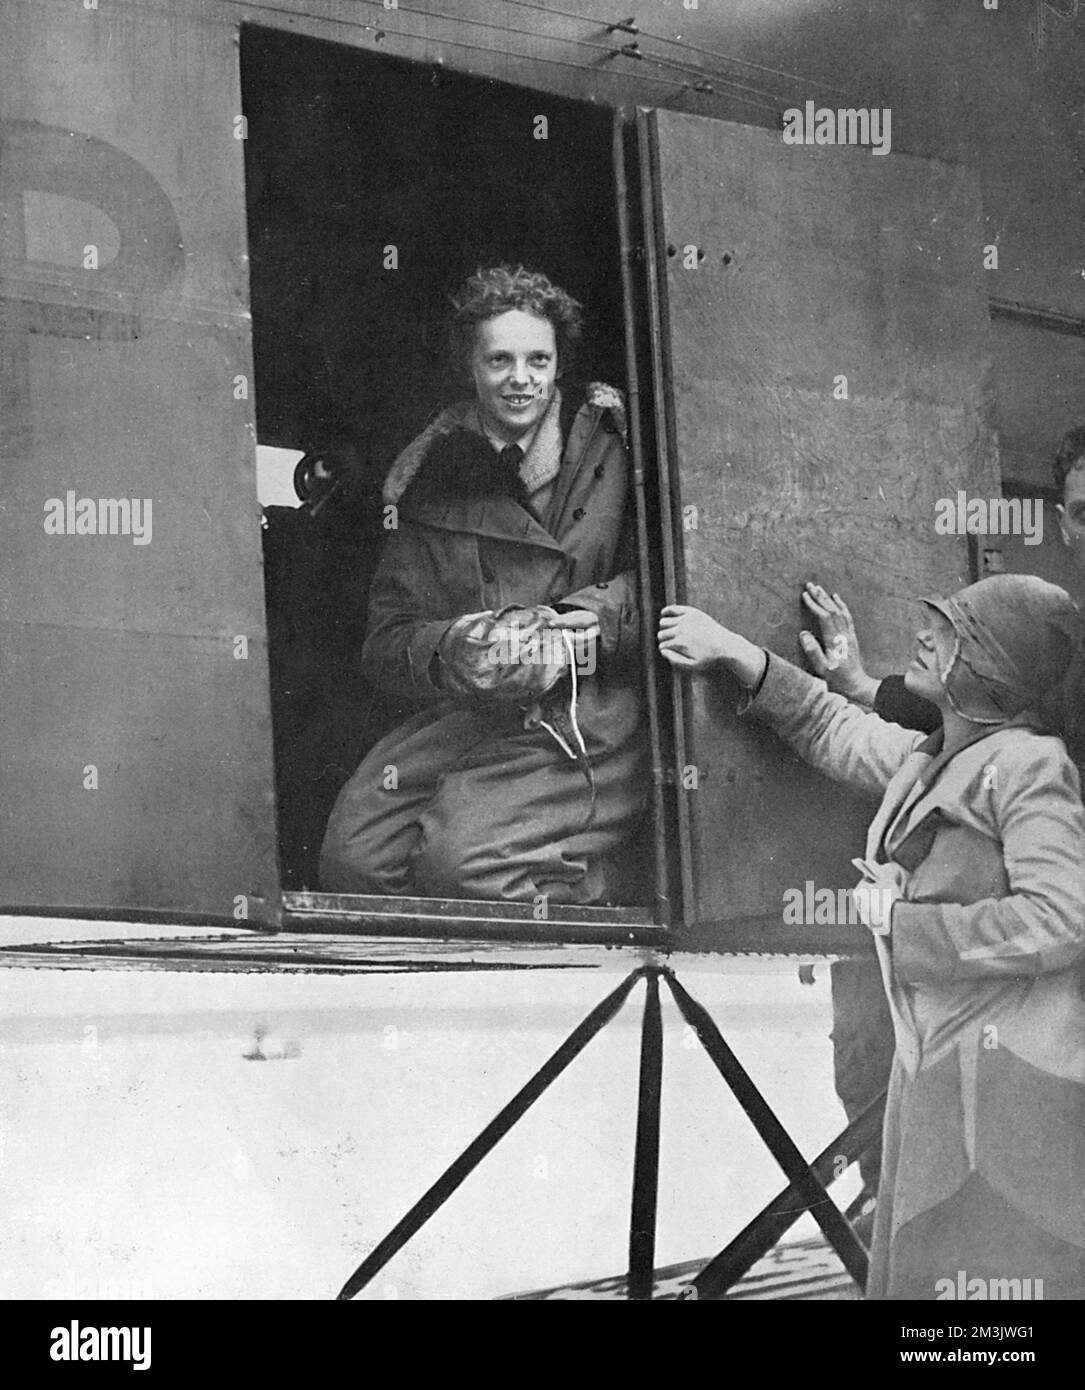 Amelia Earhart (1897 - 1937) quelques instants après avoir terminé son vol transatlantique en 1928. Bien qu'elle ne soit qu'un passager, Earhart a été la première femme à voler l'Atlantique. Dérangé par le fait que ses pilotes sur ce voyage historique n'avaient pas reçu de crédit, elle a décidé de voler en solo, pour finalement atteindre son objectif en mai 1932 quand elle a volé de Terre-Neuve à l'Irlande du Nord. L'avion d'Earhart a disparu lors d'un vol autour du monde avec son navigateur, Frederick Noonan, en 1937. 1928 Banque D'Images